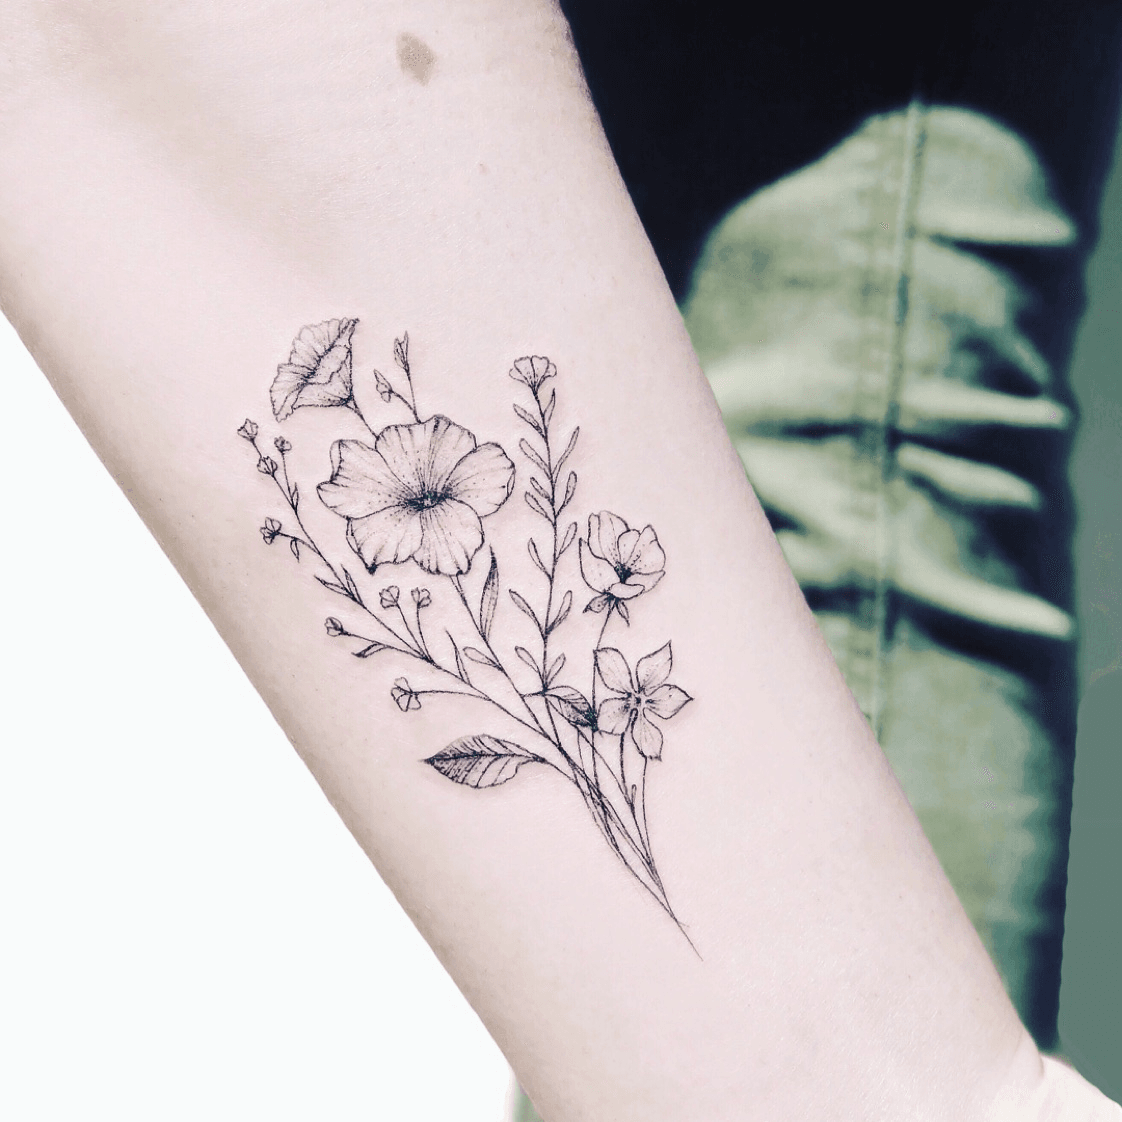 August Birth Flower Tattoos Poppies  Gladiolus  TattooGlee  Birth flower  tattoos Flower tattoo designs August flower tattoo